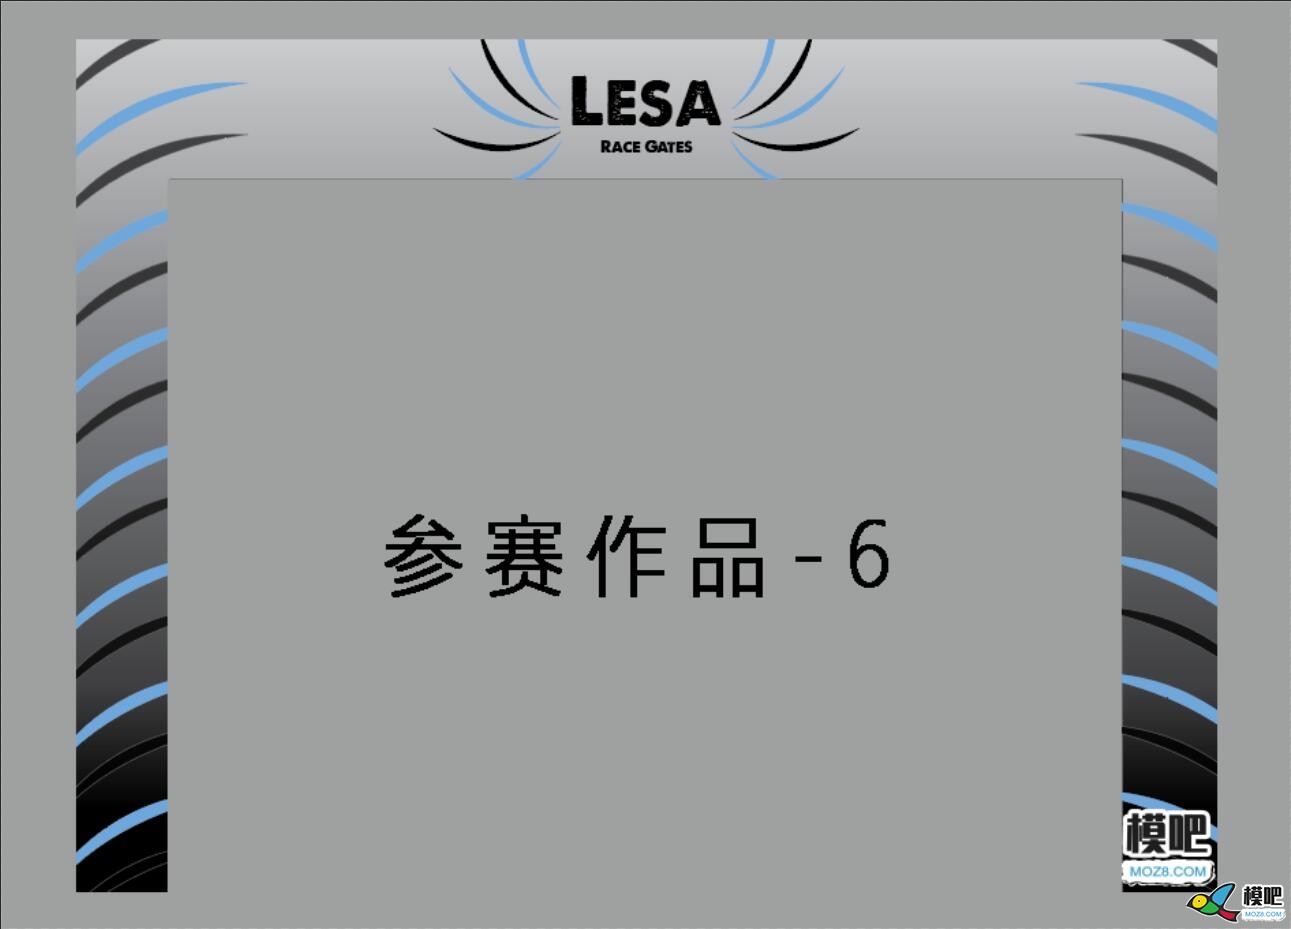 LESA品牌无人机穿越门图案设计大赛获奖公示 穿越机,穿越门 作者:小兔子 7145 